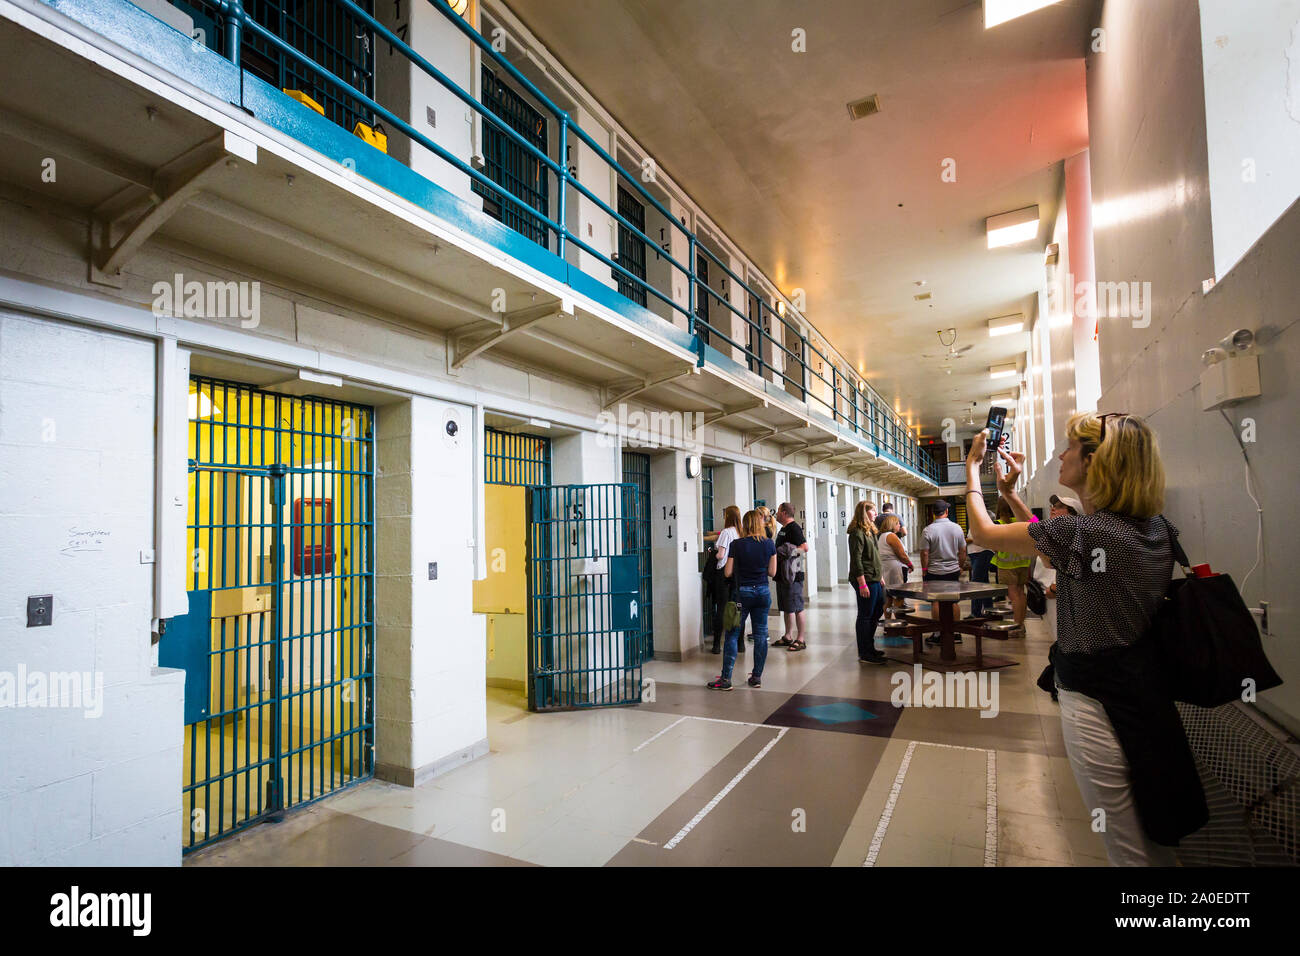 Reihe der Gefängniszelle Türen Kingston Justizvollzugsanstalt einen ehemaligen Hochsicherheitsgefängnis, Juni 1835 geöffnet und geschlossen September 2013 jetzt offen für Jailhouse T Stockfoto